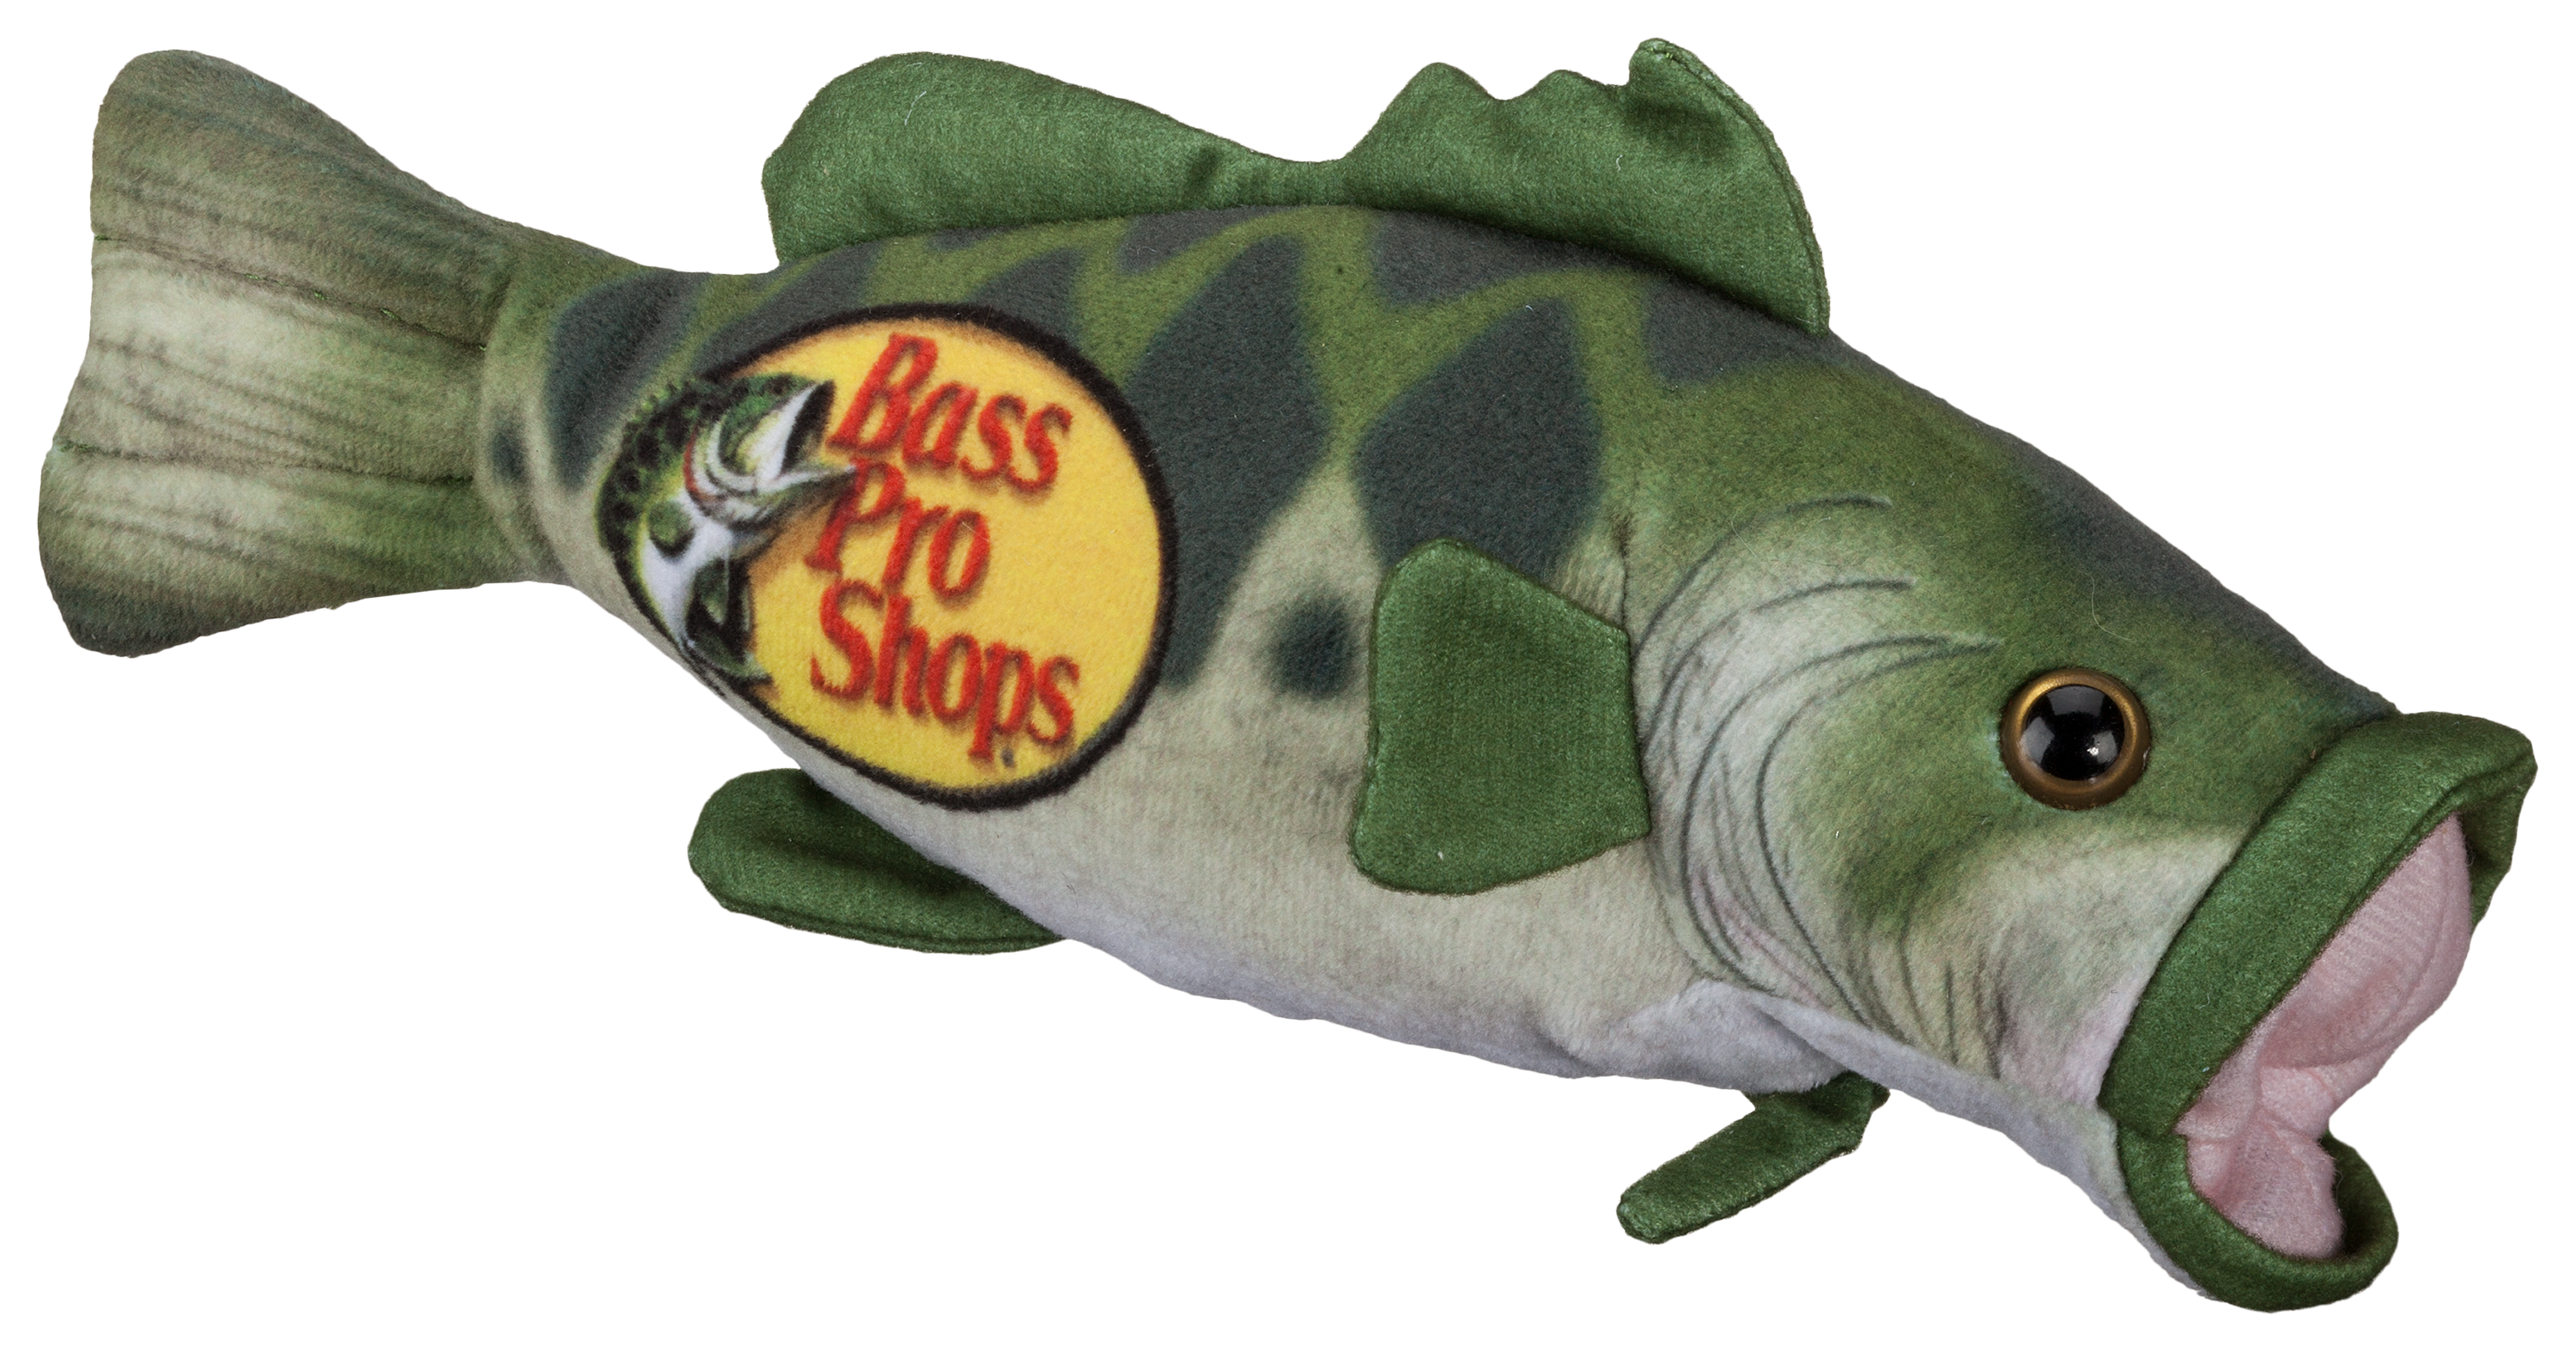 Bass Pro Shops Large Mouth Bass Plush Stuffed Animal